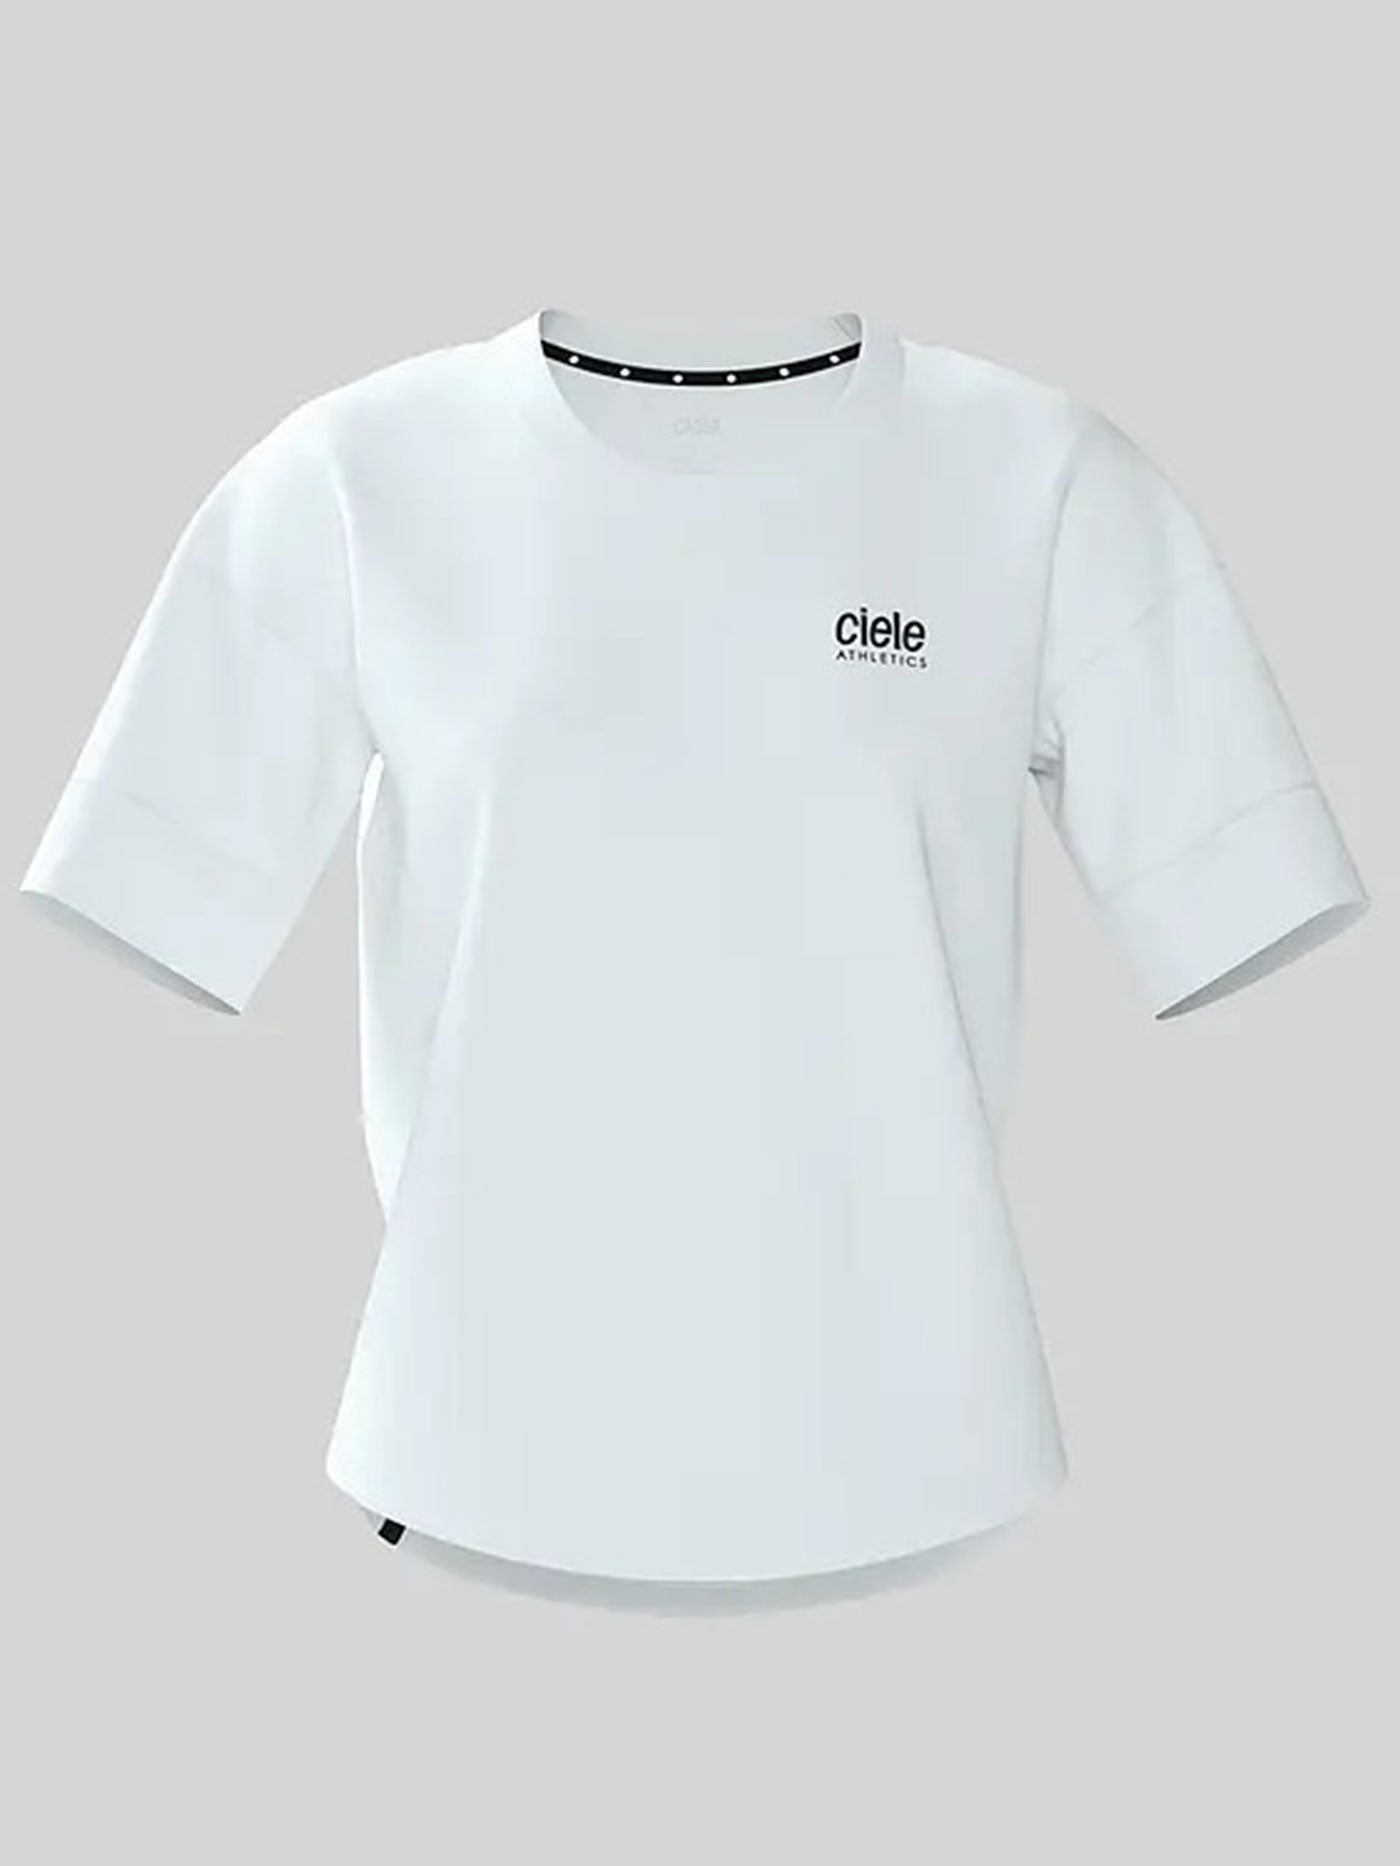 Ciele WNSBTShirt Athletics T-Shirt